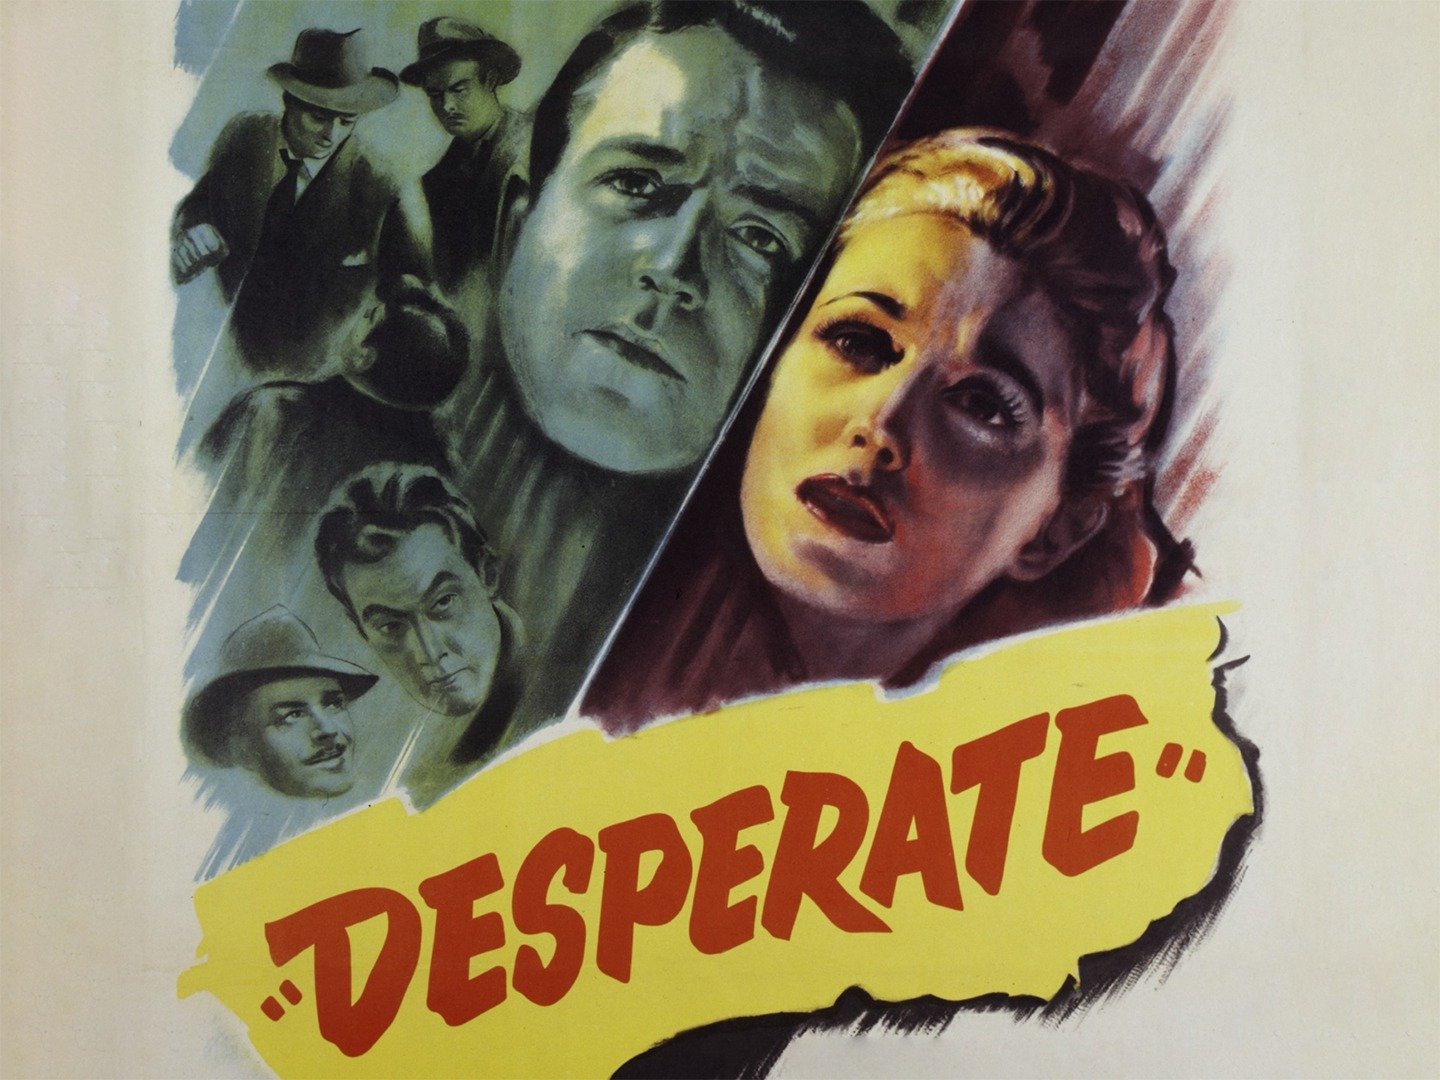 Desperate 1947